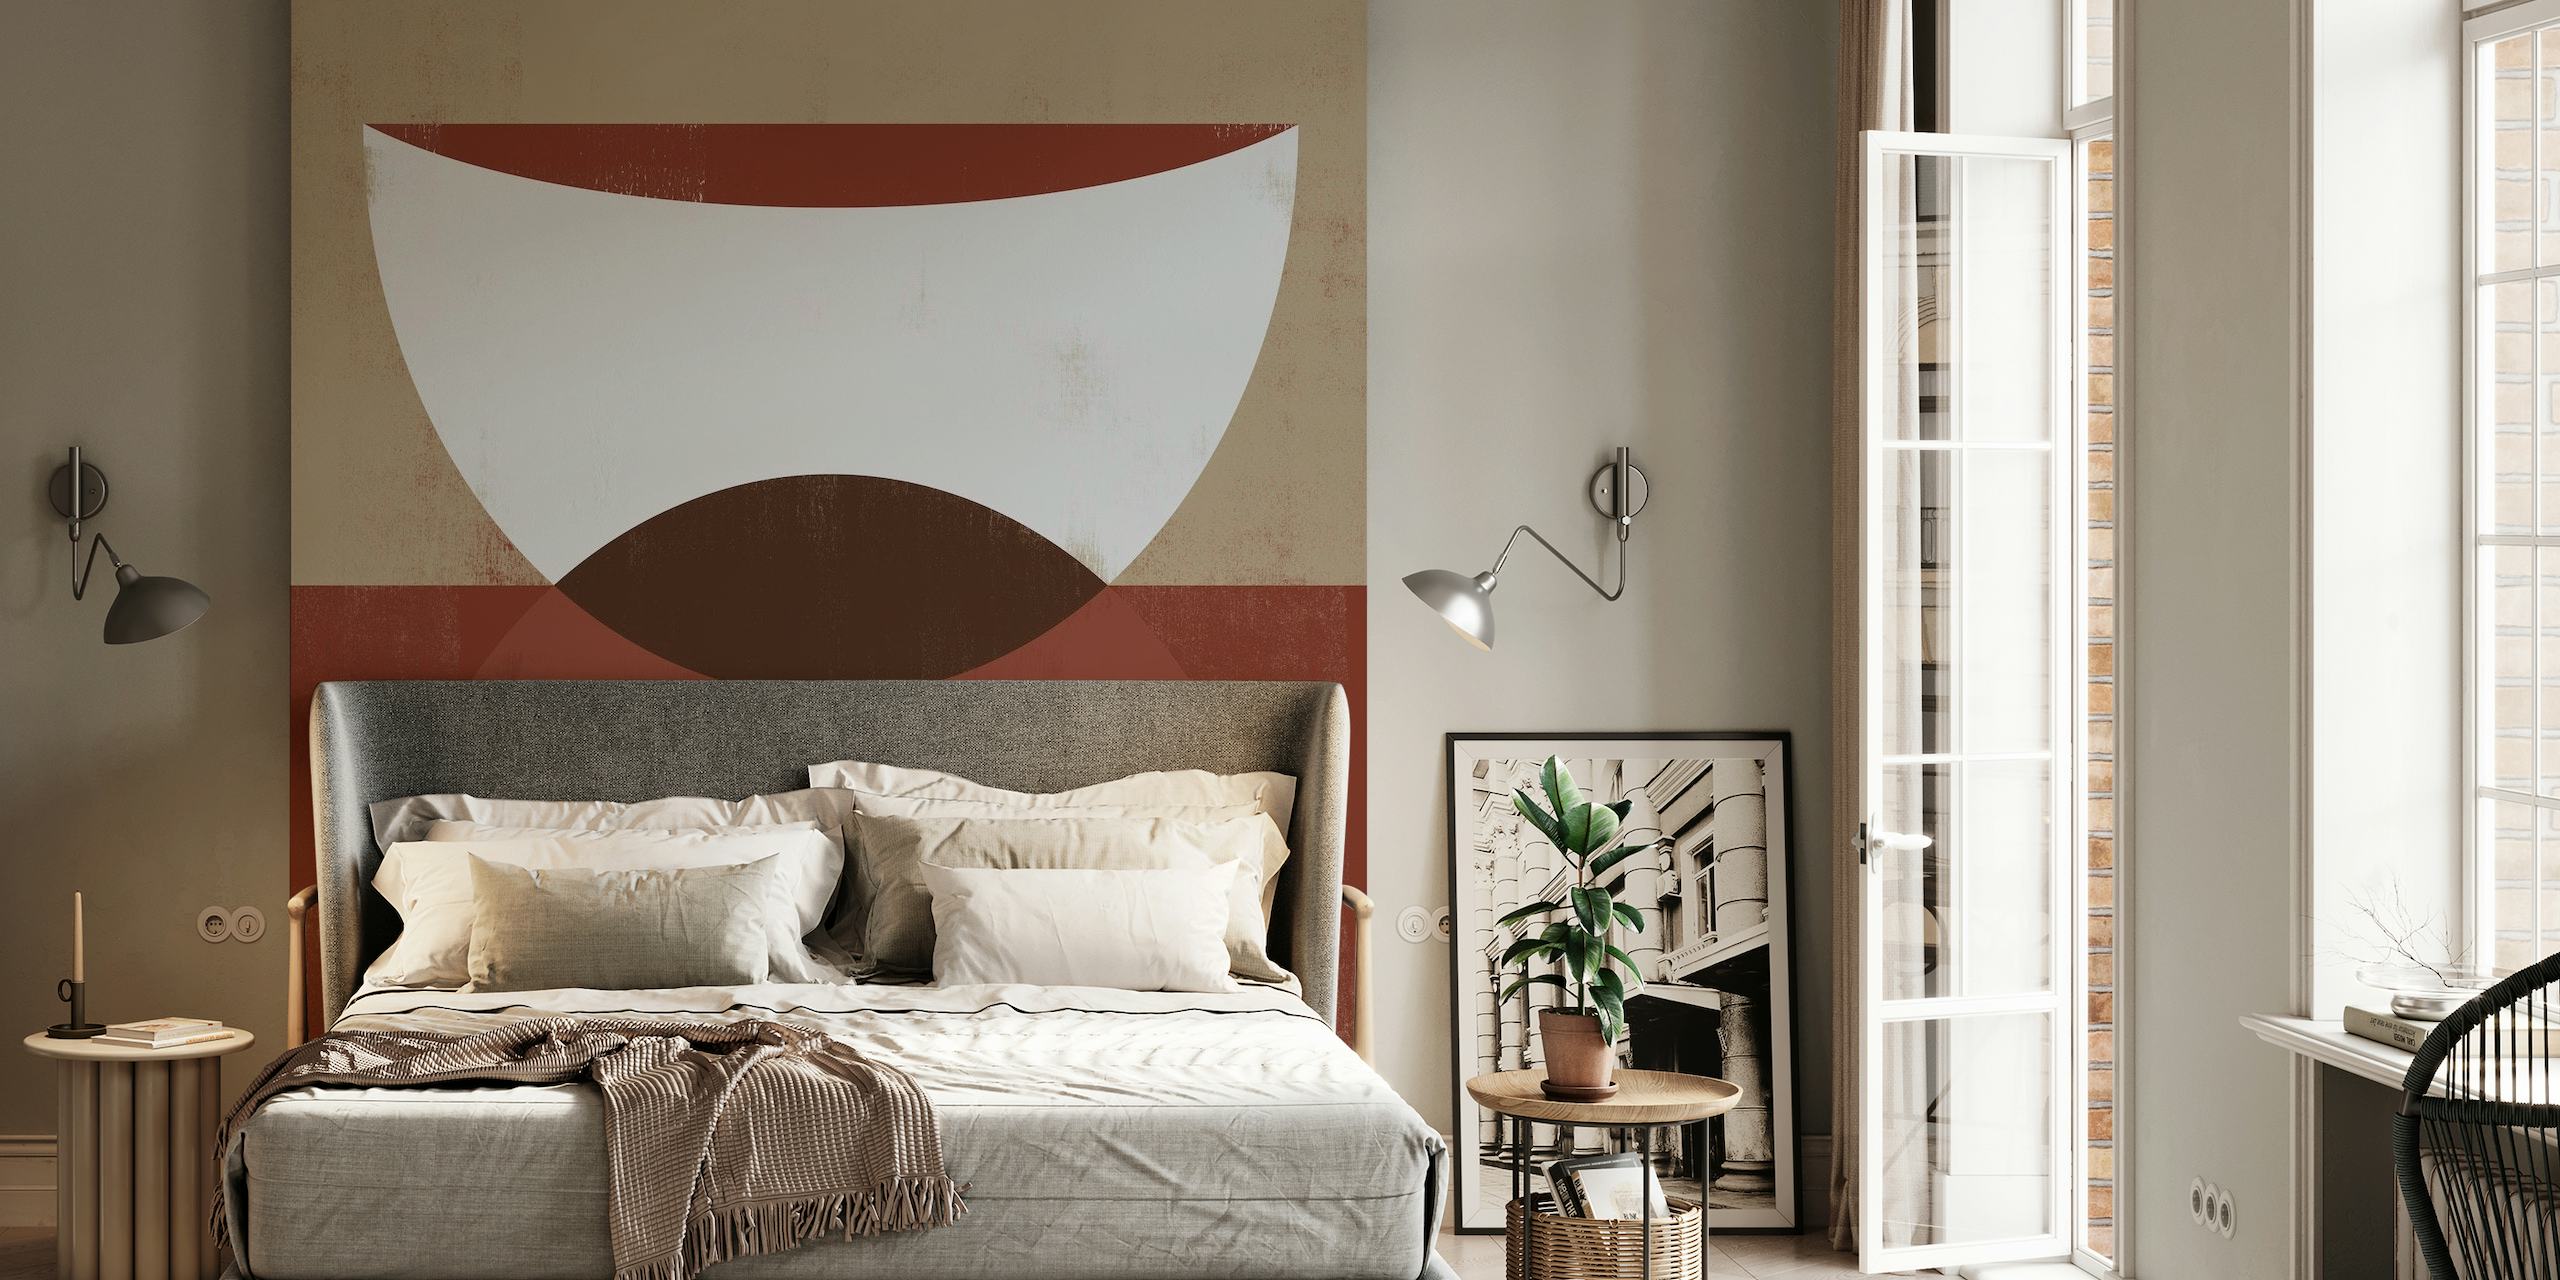 SHE Rouge 4 abstraktes geometrisches Wandbild in Creme, Braun und Kastanienbraun